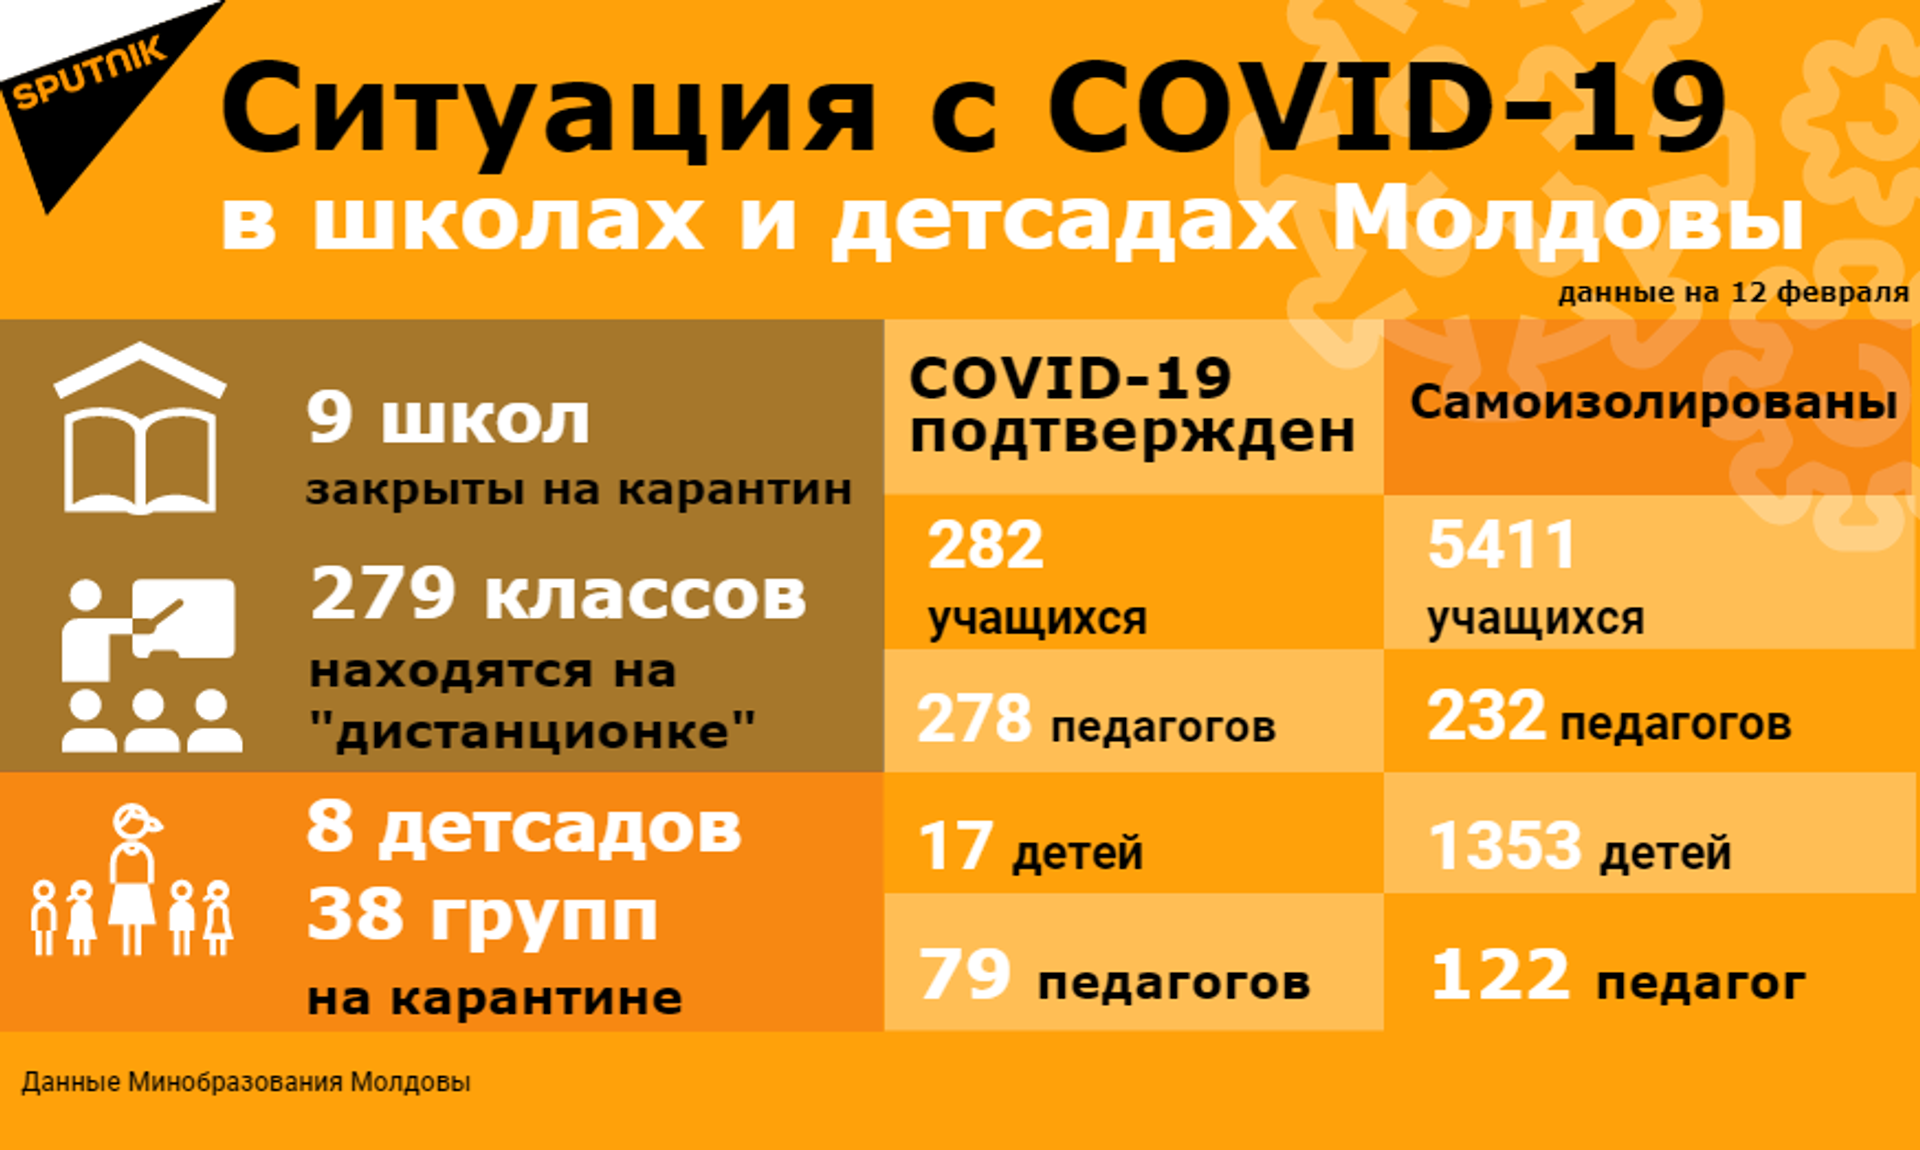 COVID-19 в Молдове: сколько школ и детсадов закрыты на карантин - Sputnik Молдова, 1920, 15.02.2021